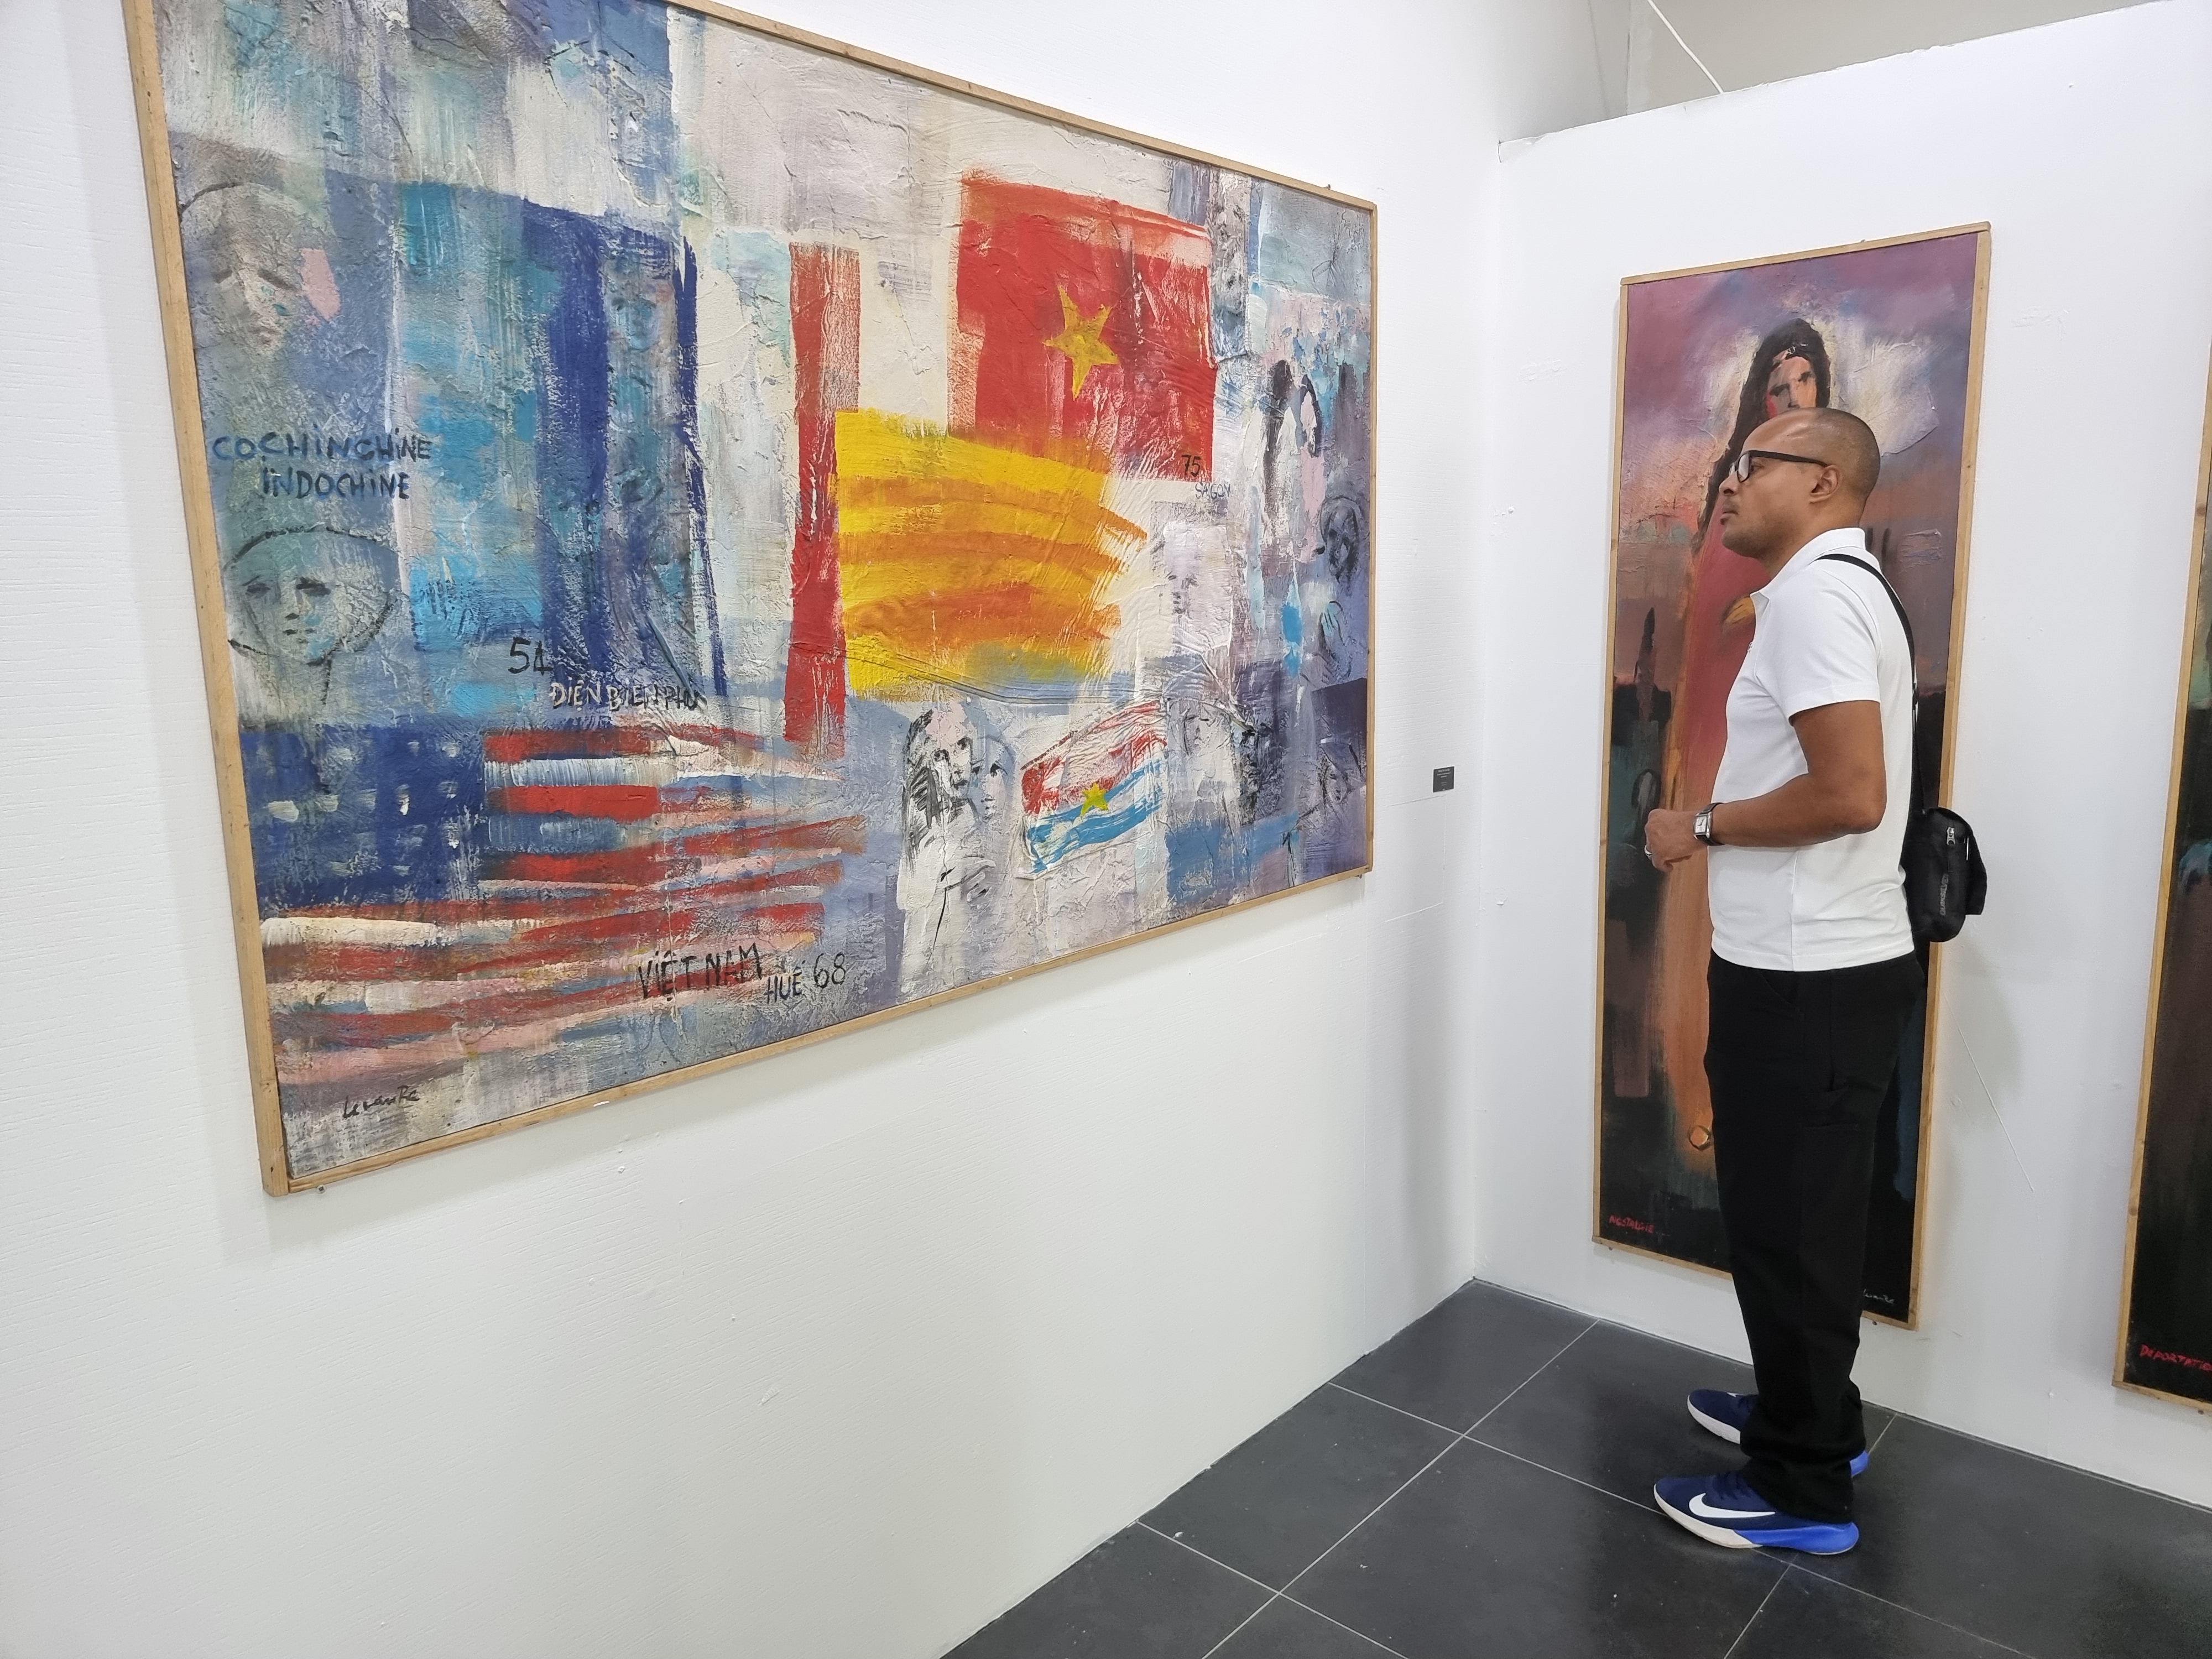 St-Denis : Une galerie d'art éphémère avec des oeuvres de grands artistes réunionnais